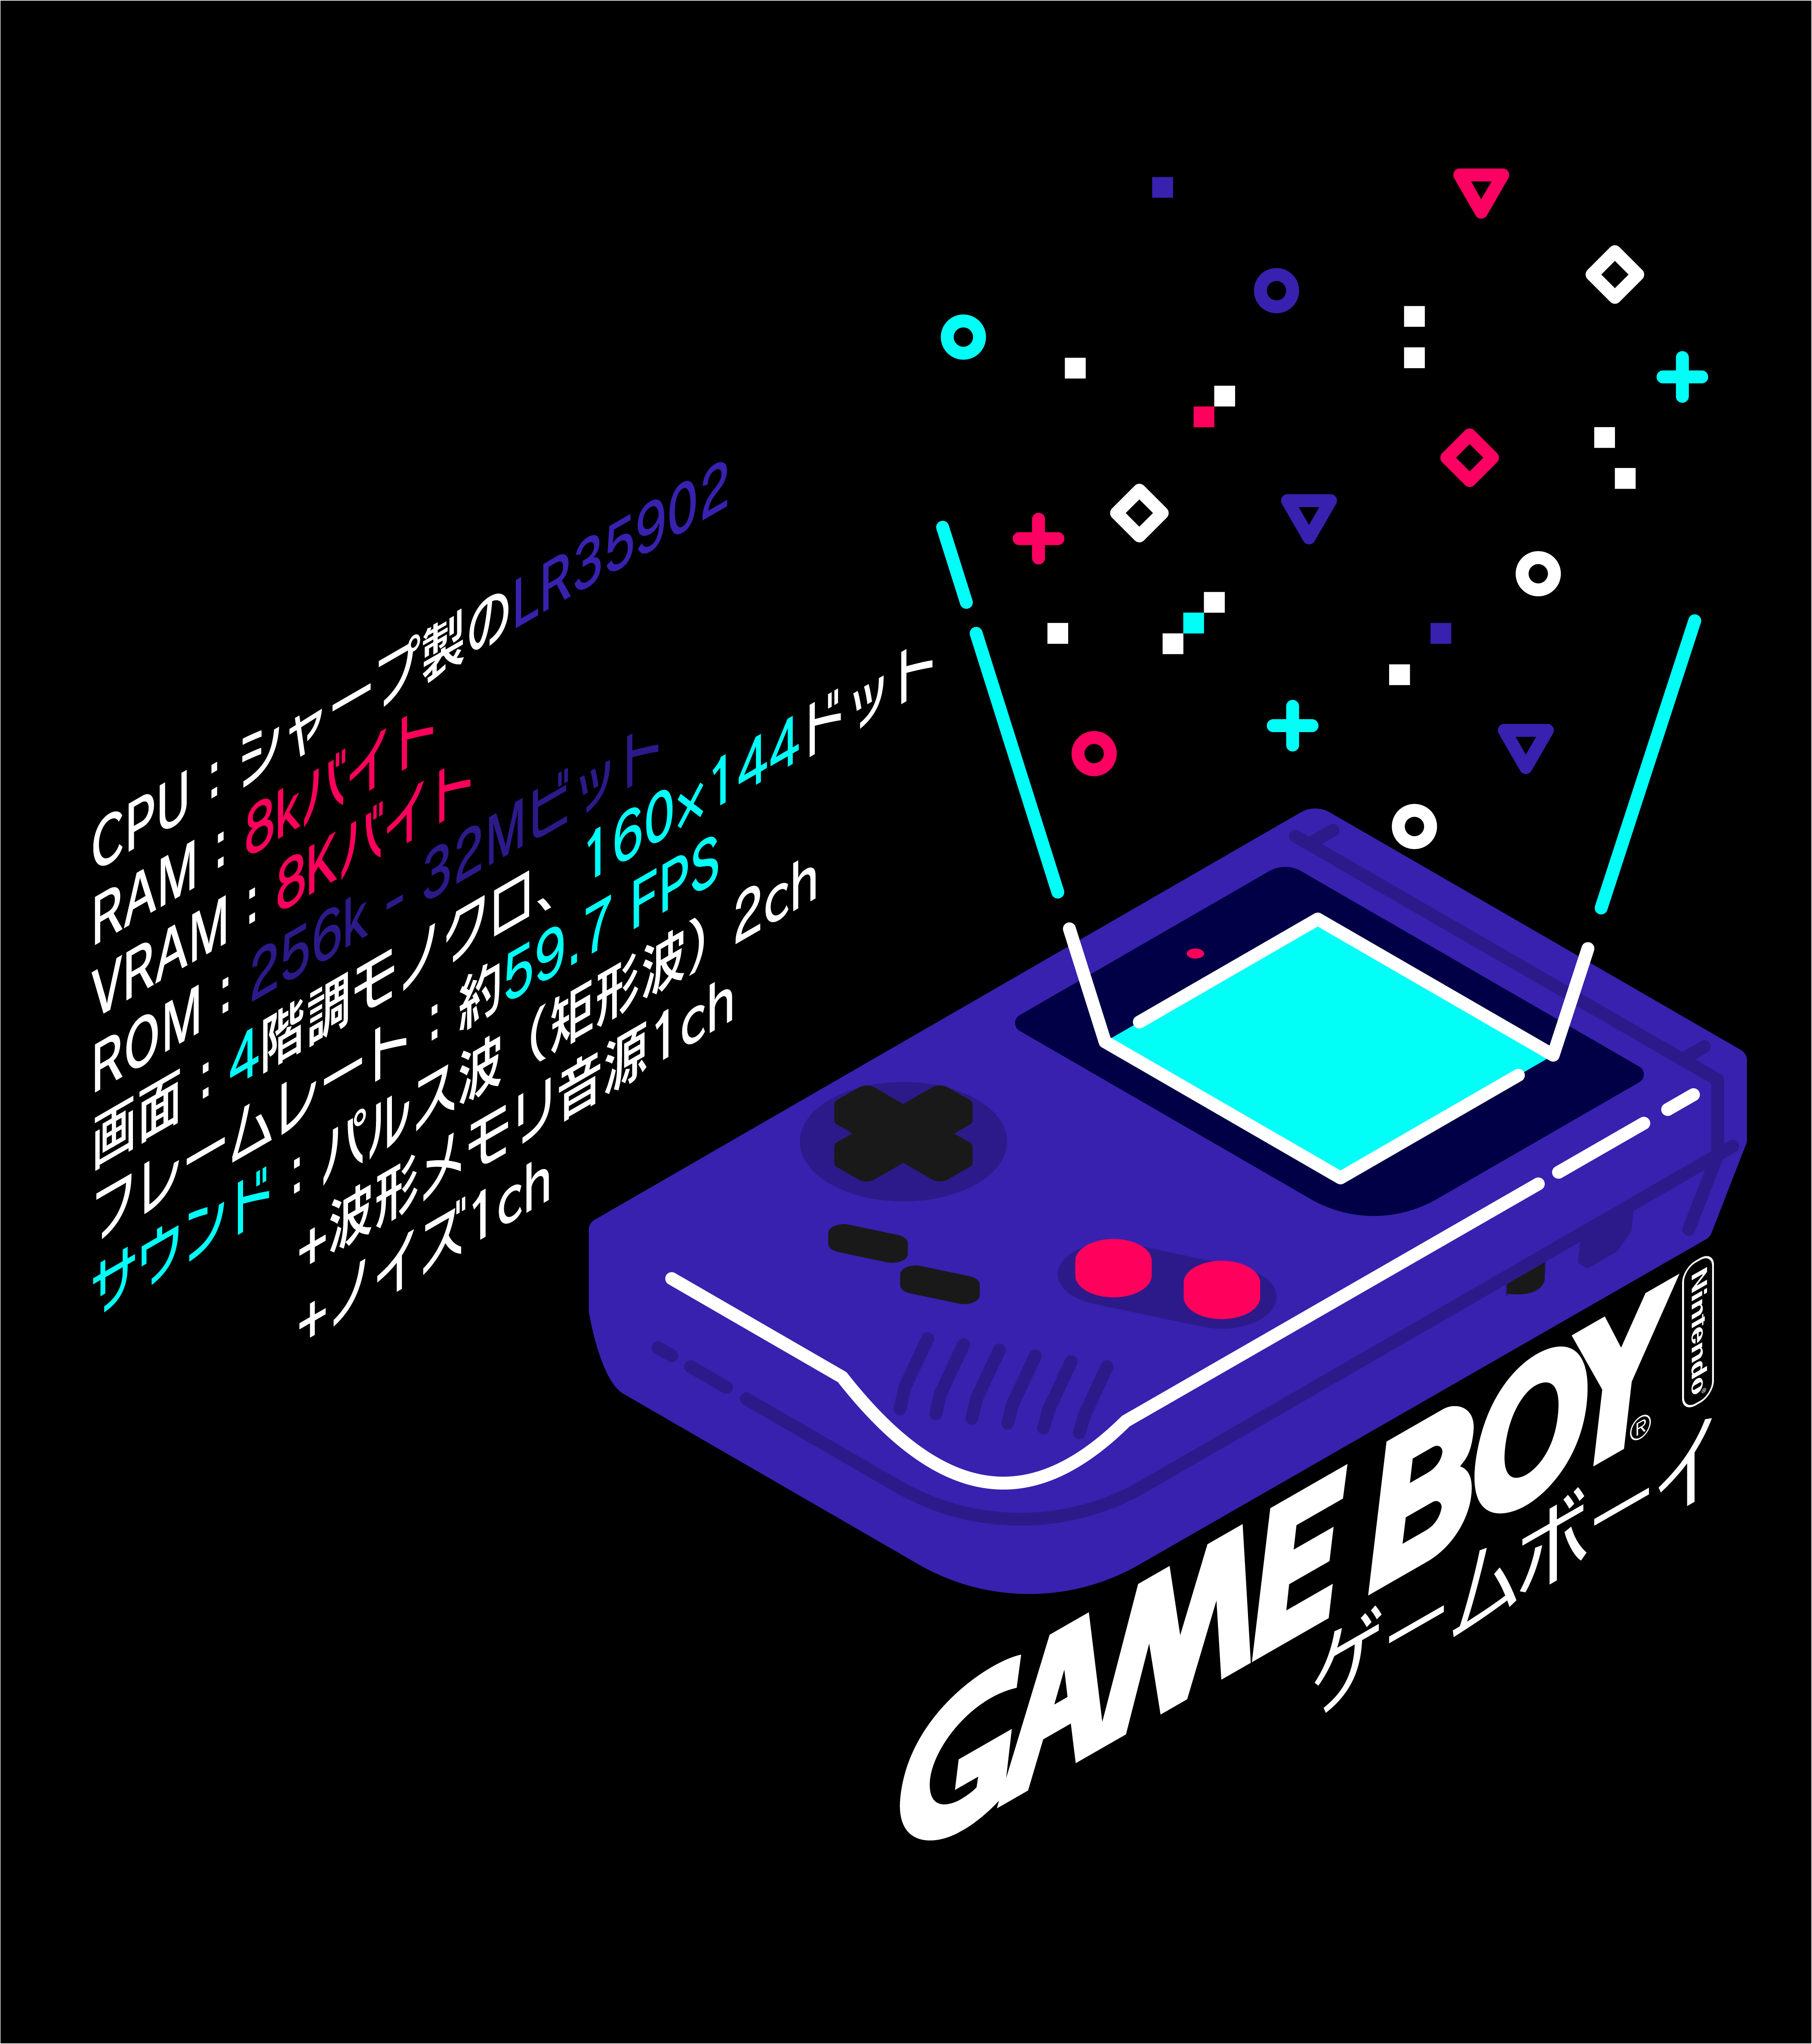 A fan made GameBoy poster, OC